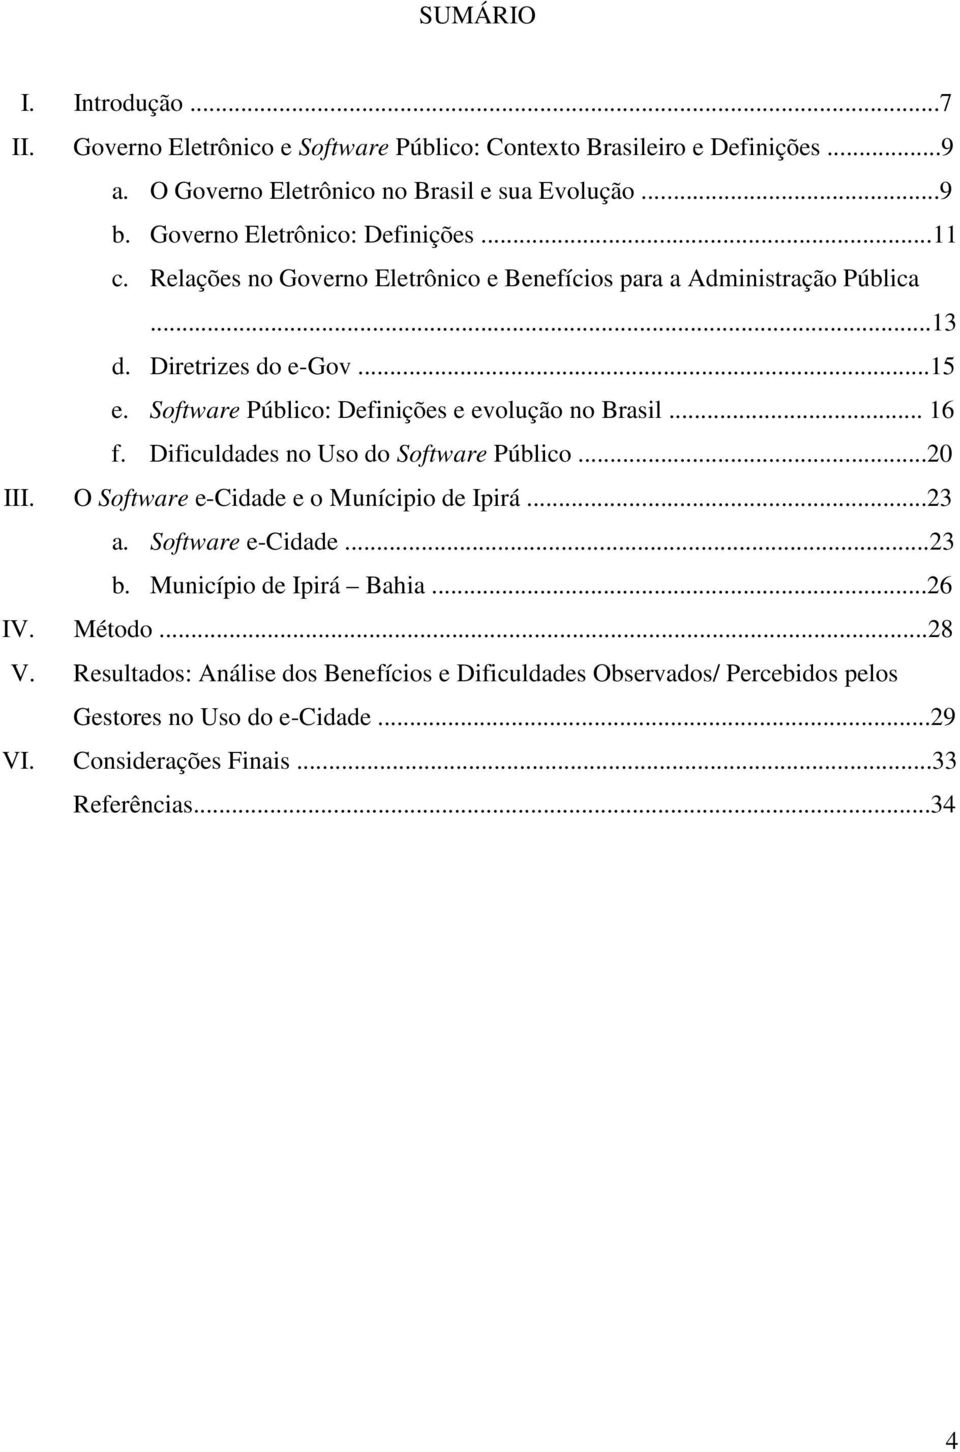 Software Público: Definições e evolução no Brasil... 16 f. Dificuldades no Uso do Software Público...20 III. O Software e-cidade e o Munícipio de Ipirá...23 a.